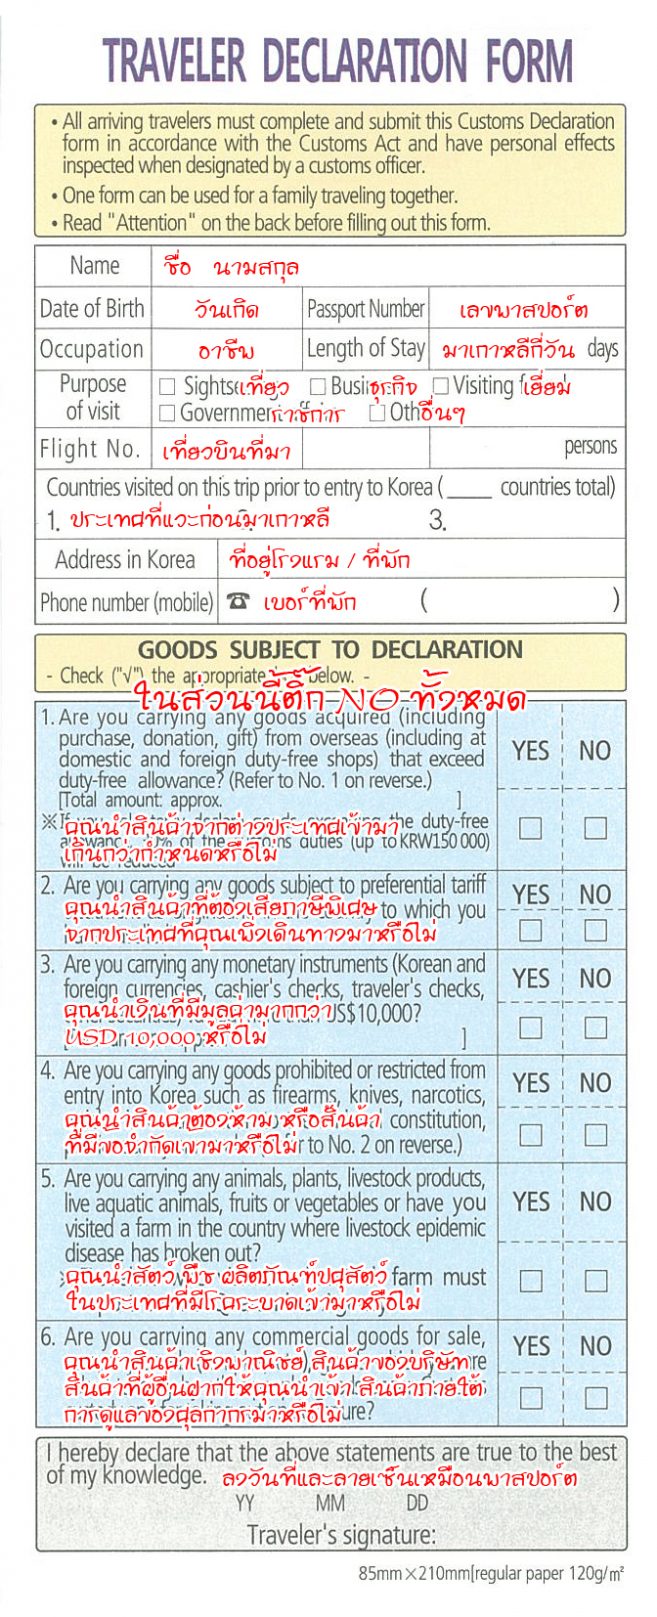 อธิบายการกรอกแบบฟอร์ม Customs Declaration เพื่อผ่าน ตม. เกาหลี